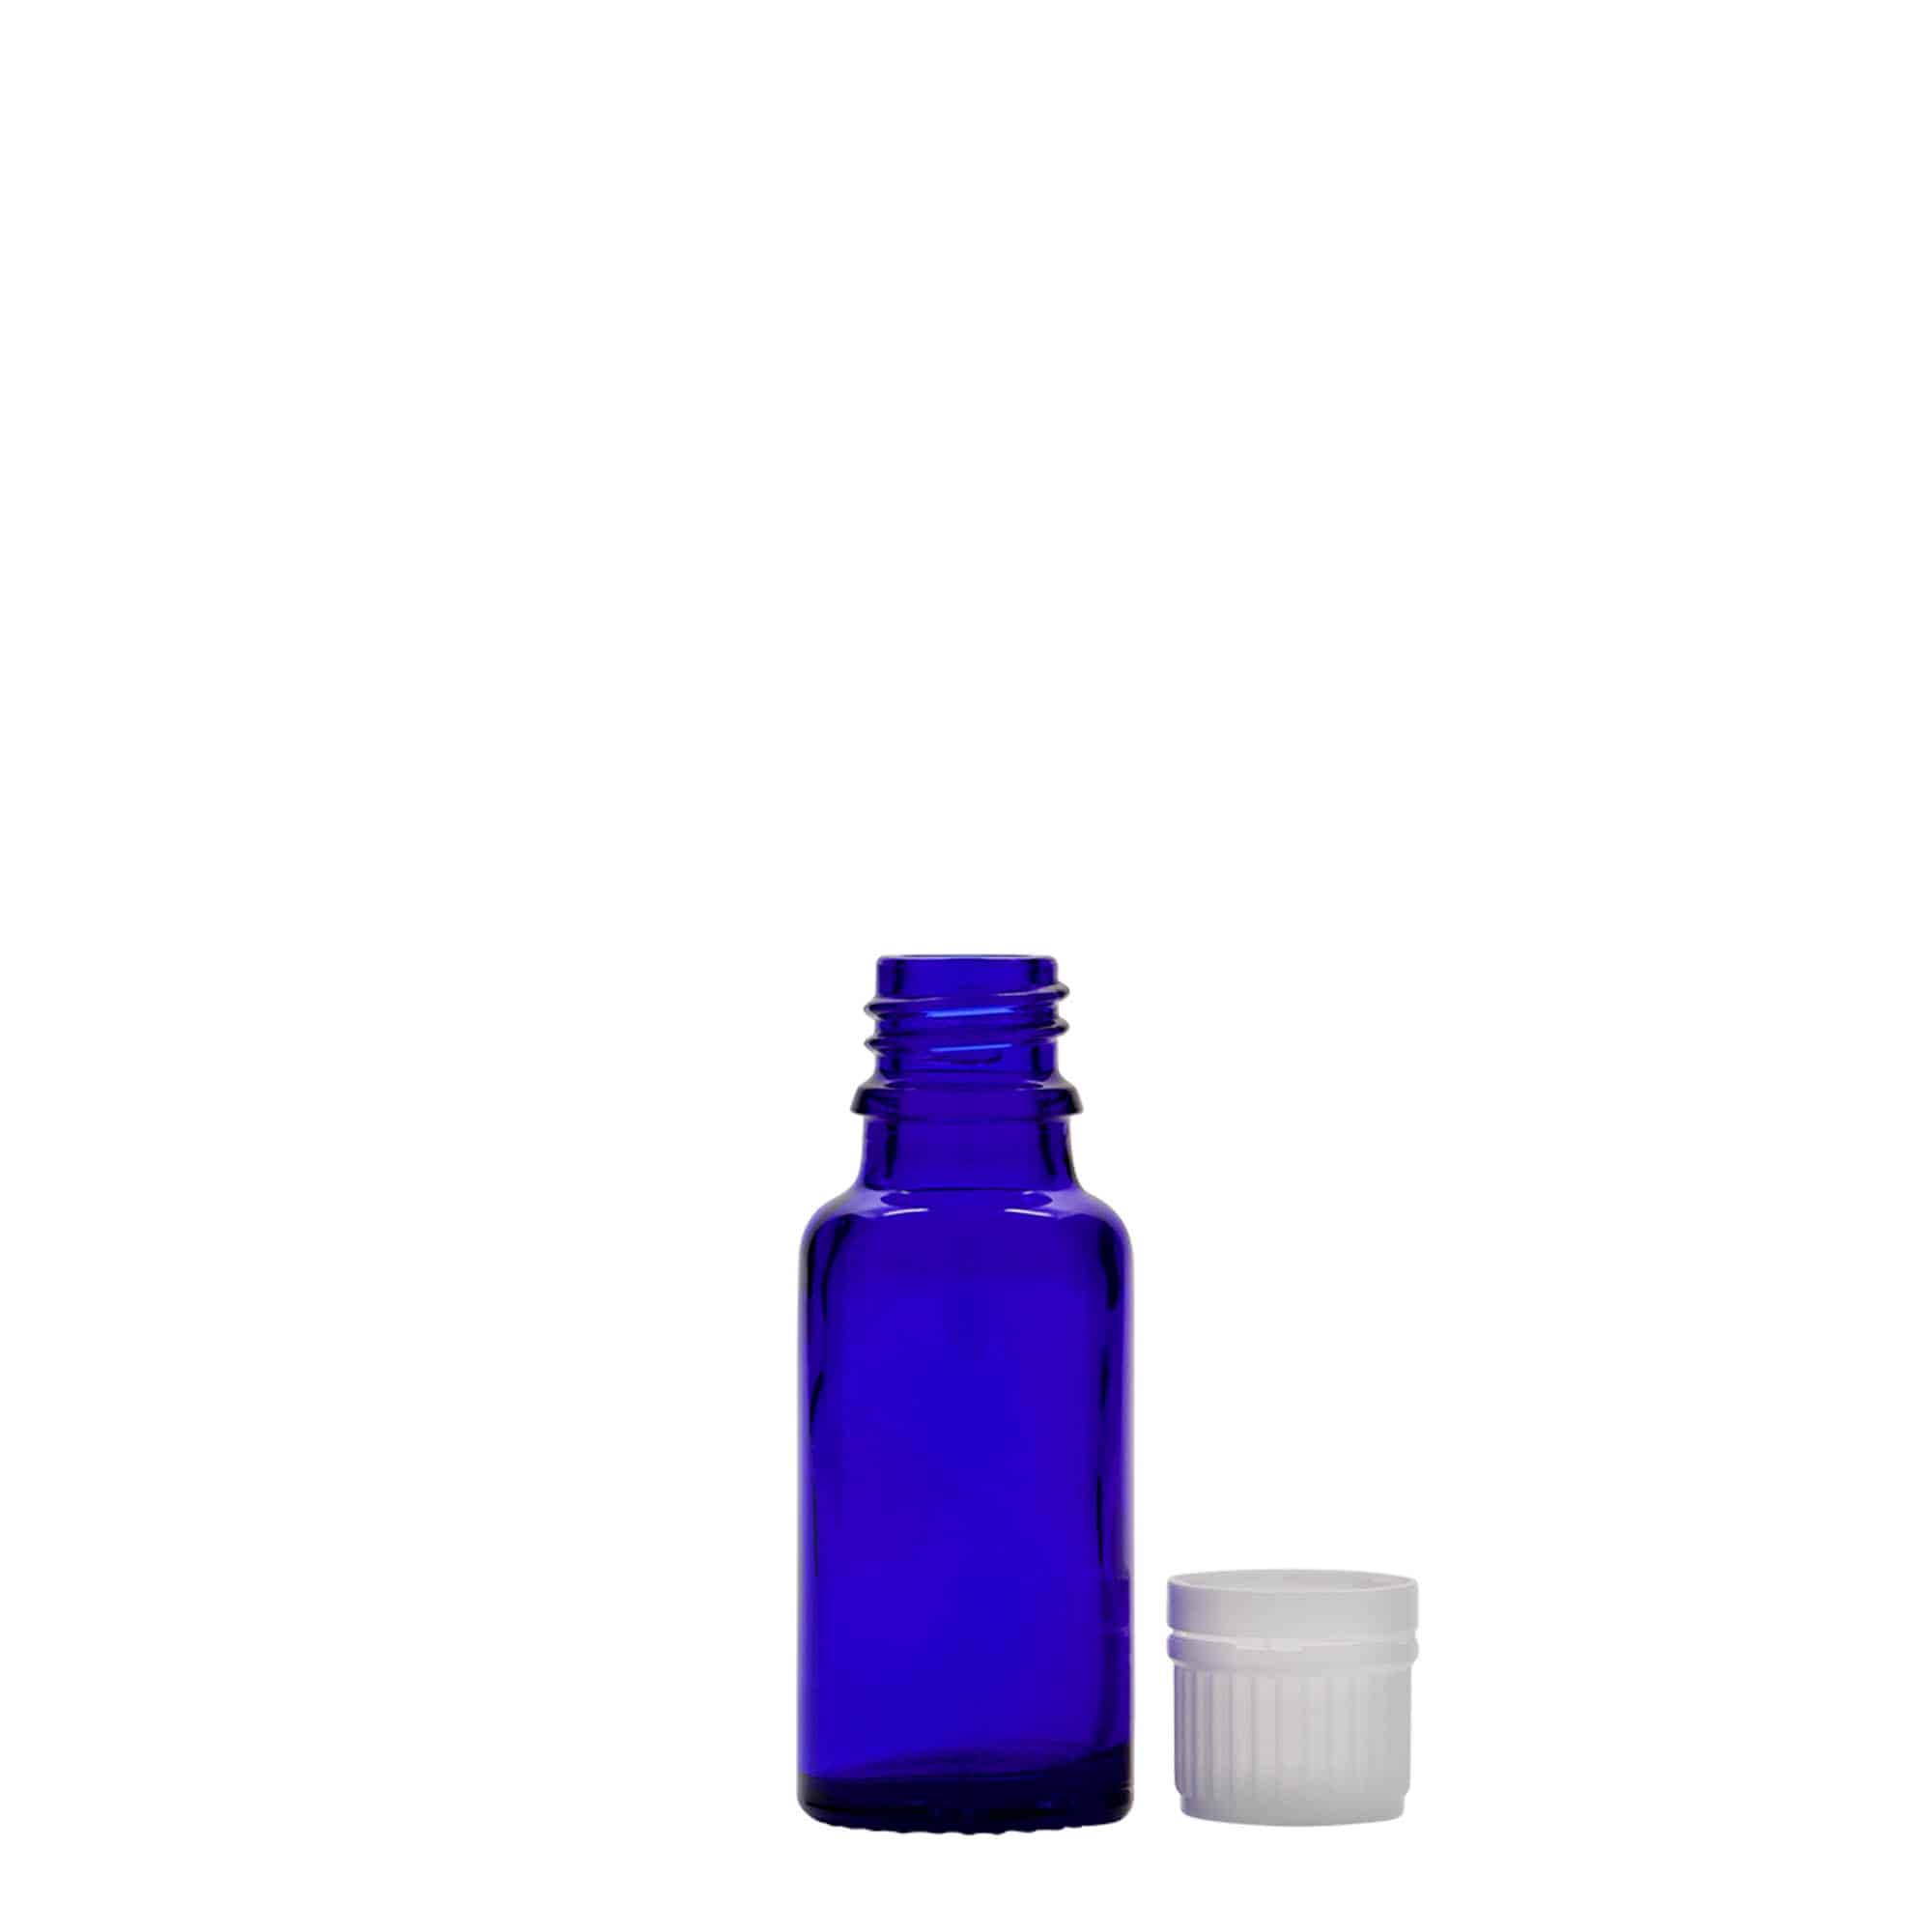 Lékovka 20 ml, sklo, královská modř, ústí: DIN 18